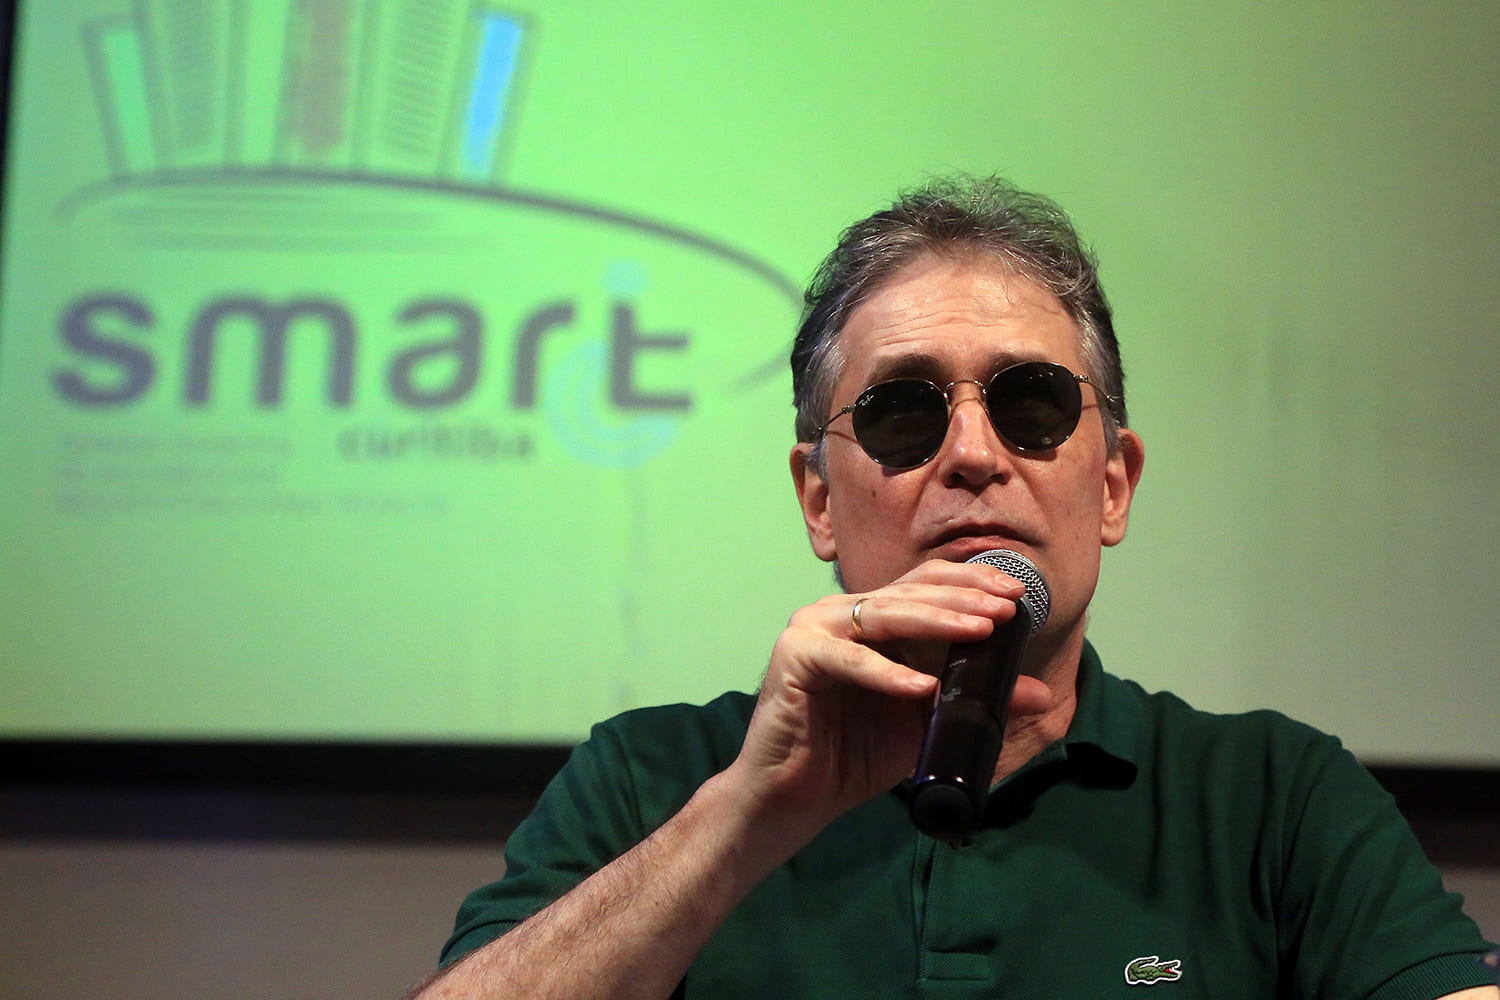 Desembargador cego, Ricardo Tadeu está segurando o microfone. Usa óculos escuros e camisa verde. Atrás há um telão com o nome Smart, evento sobre acessibilidade arquitetônica para técnicos.